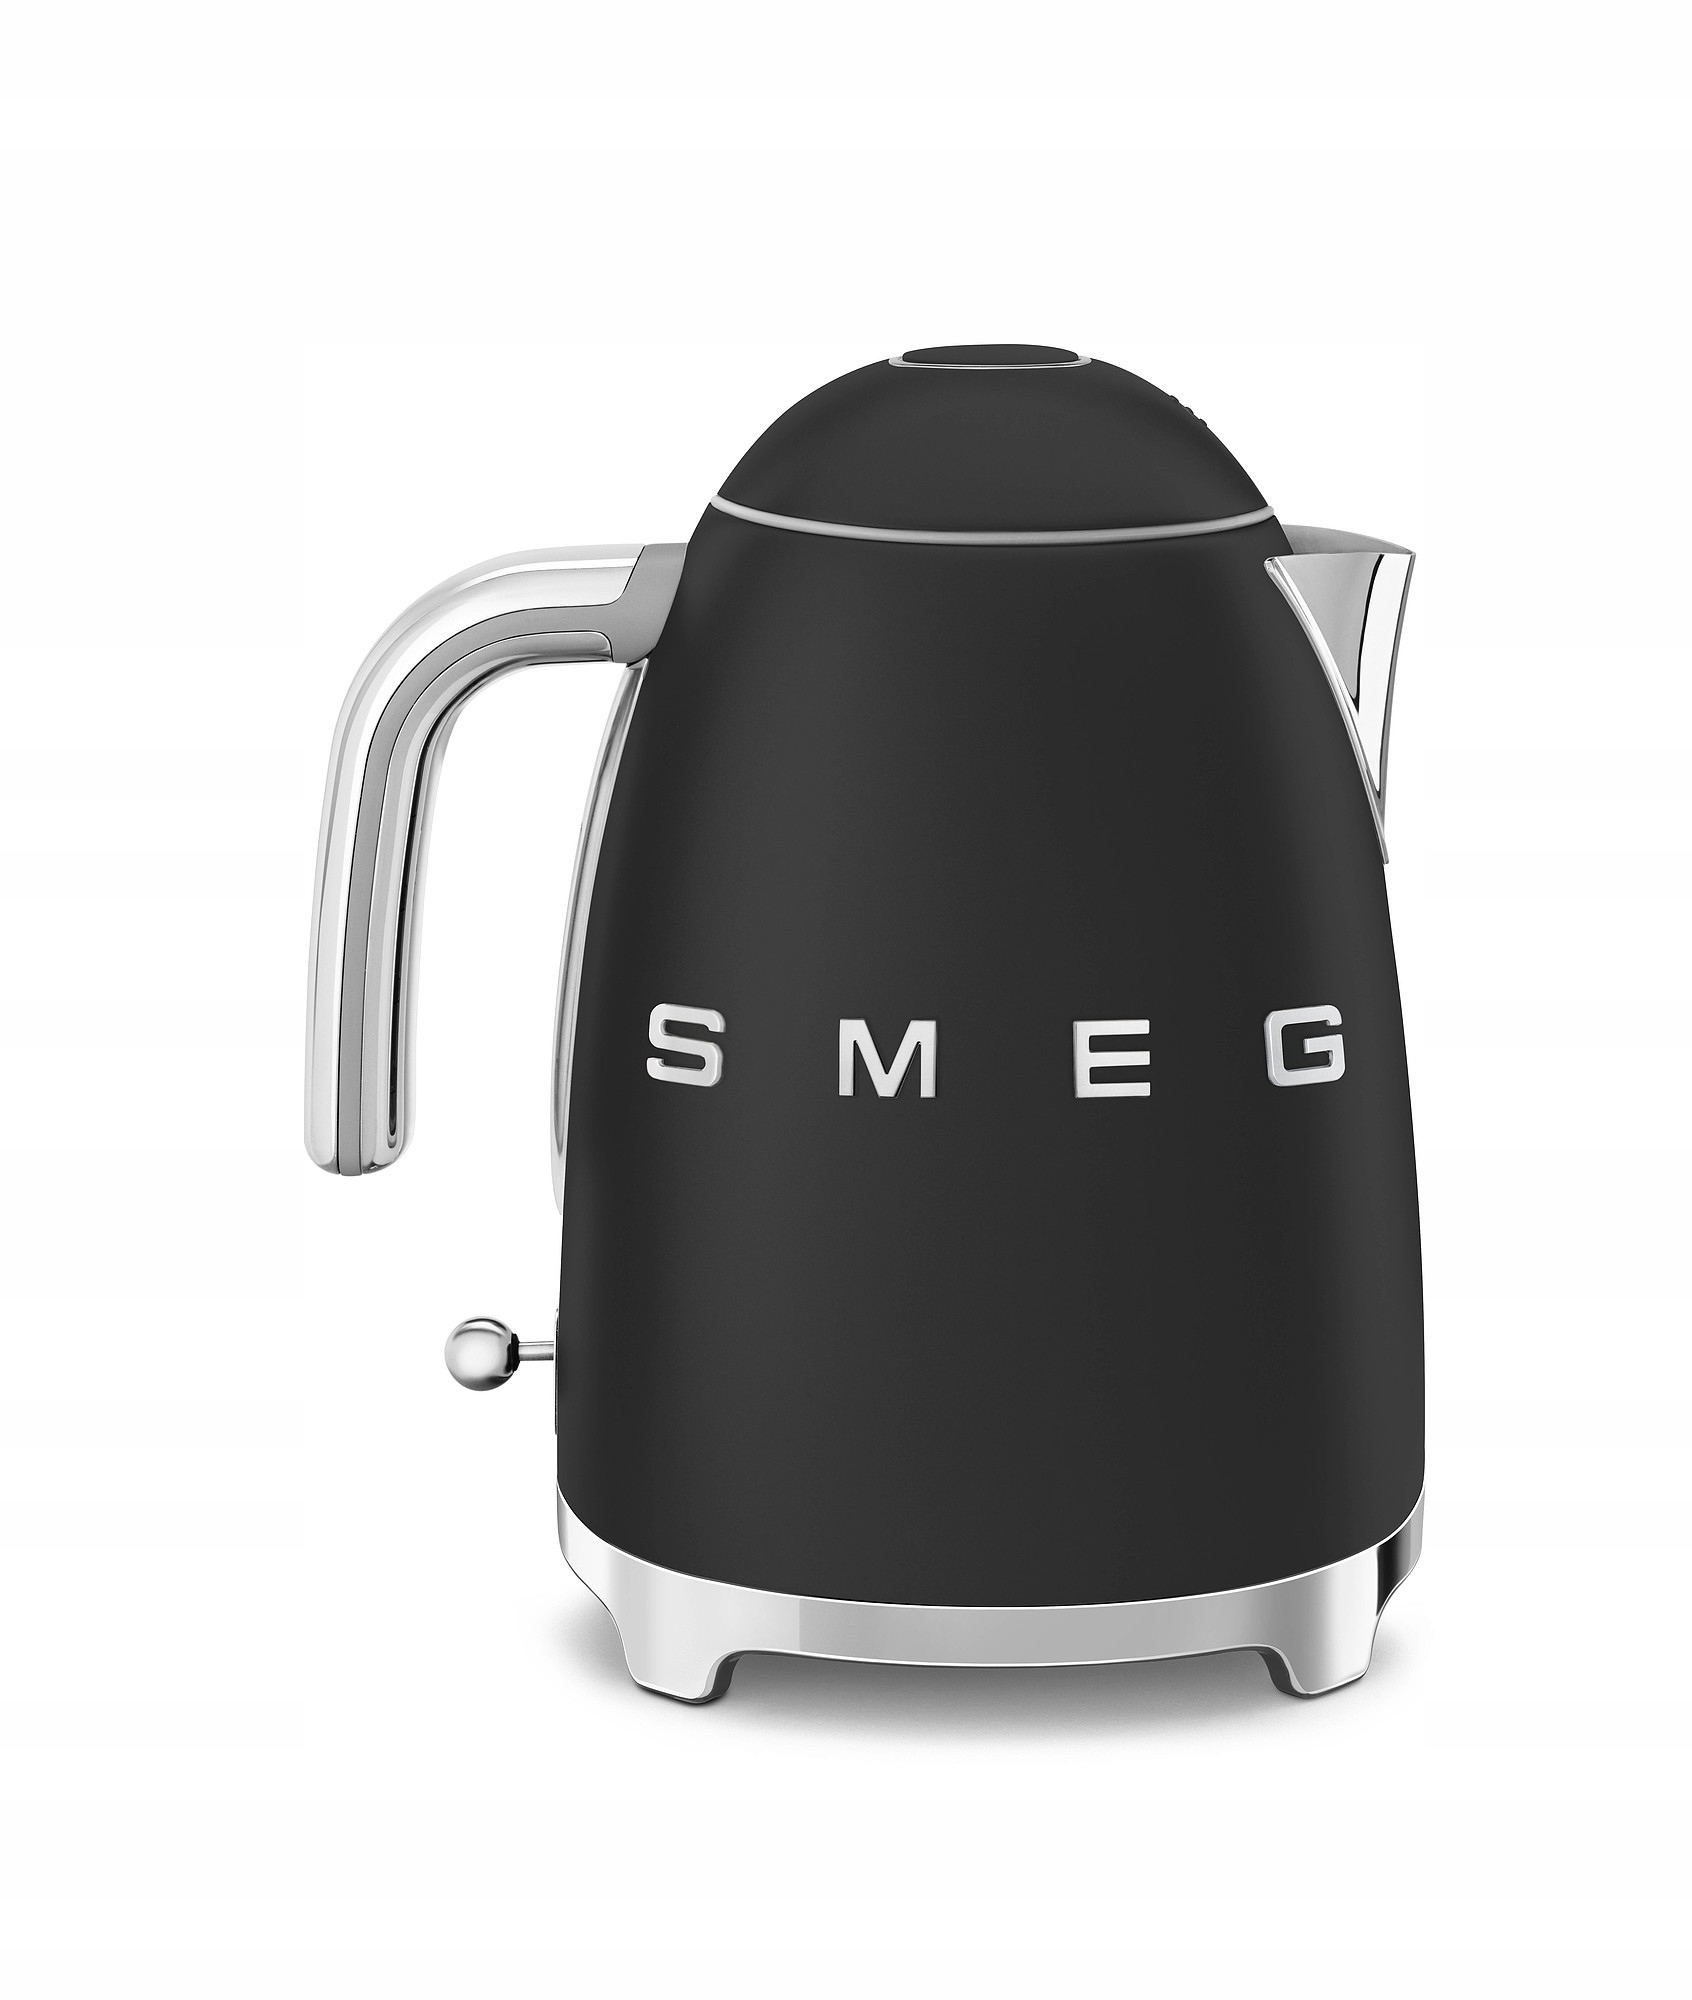 VIP пропозиція - SMEG - Електричний чайник, чорний має код виробника 8017709290795